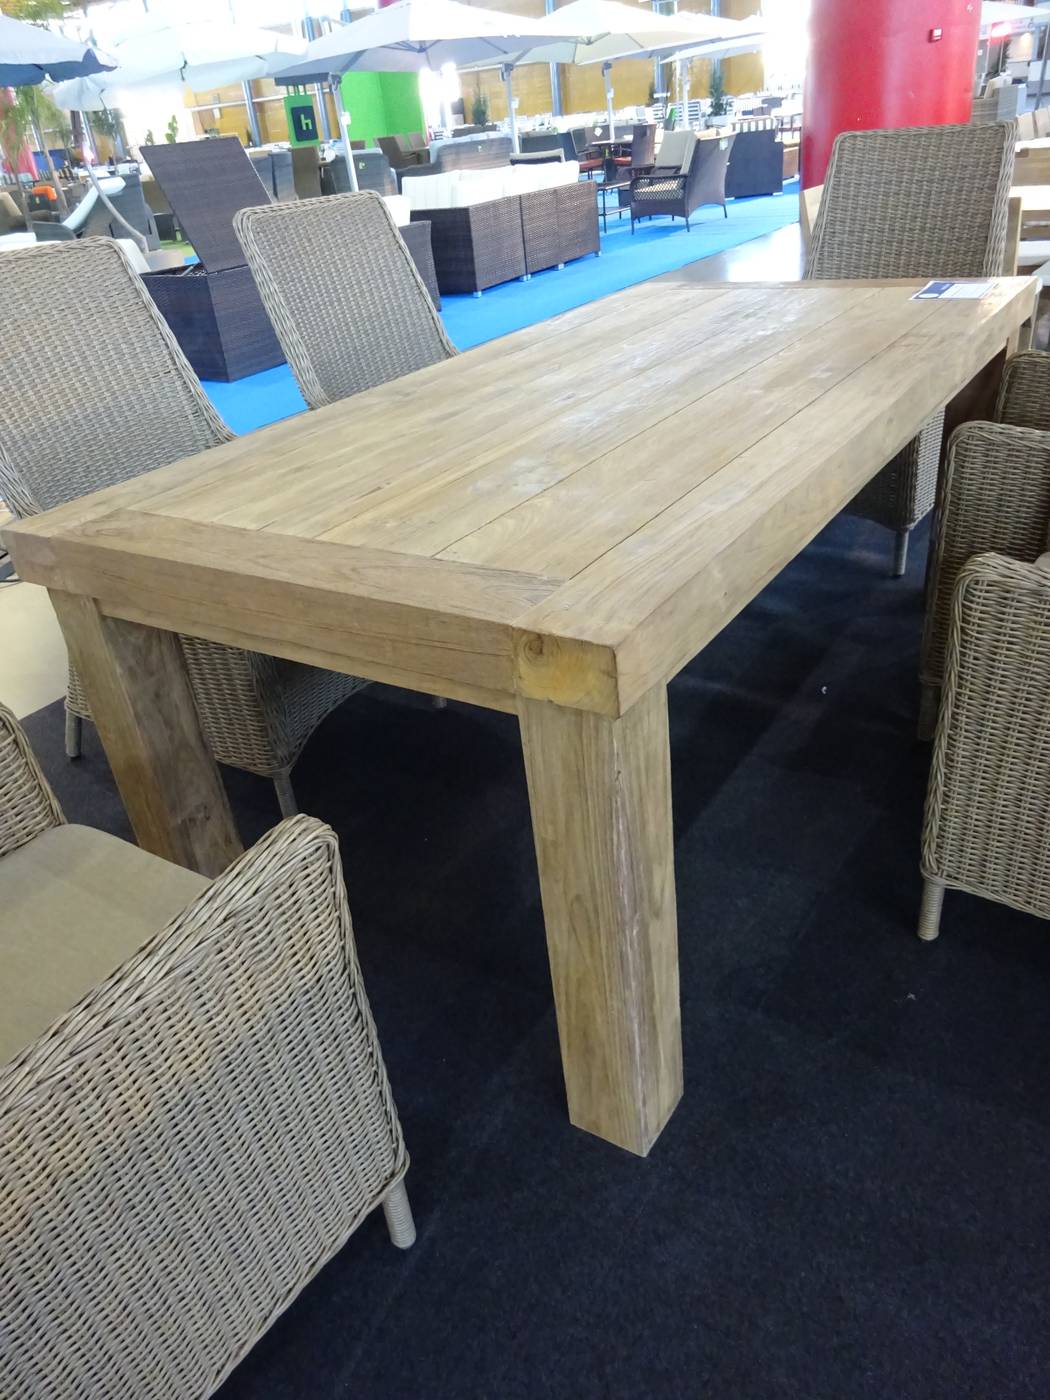 Set Madera Teka Cobo-Etna - Conjunto para jardín de madera de teka: mesa de madera de teka de 200 cm + 6 sillones con cojines de ratán sintético